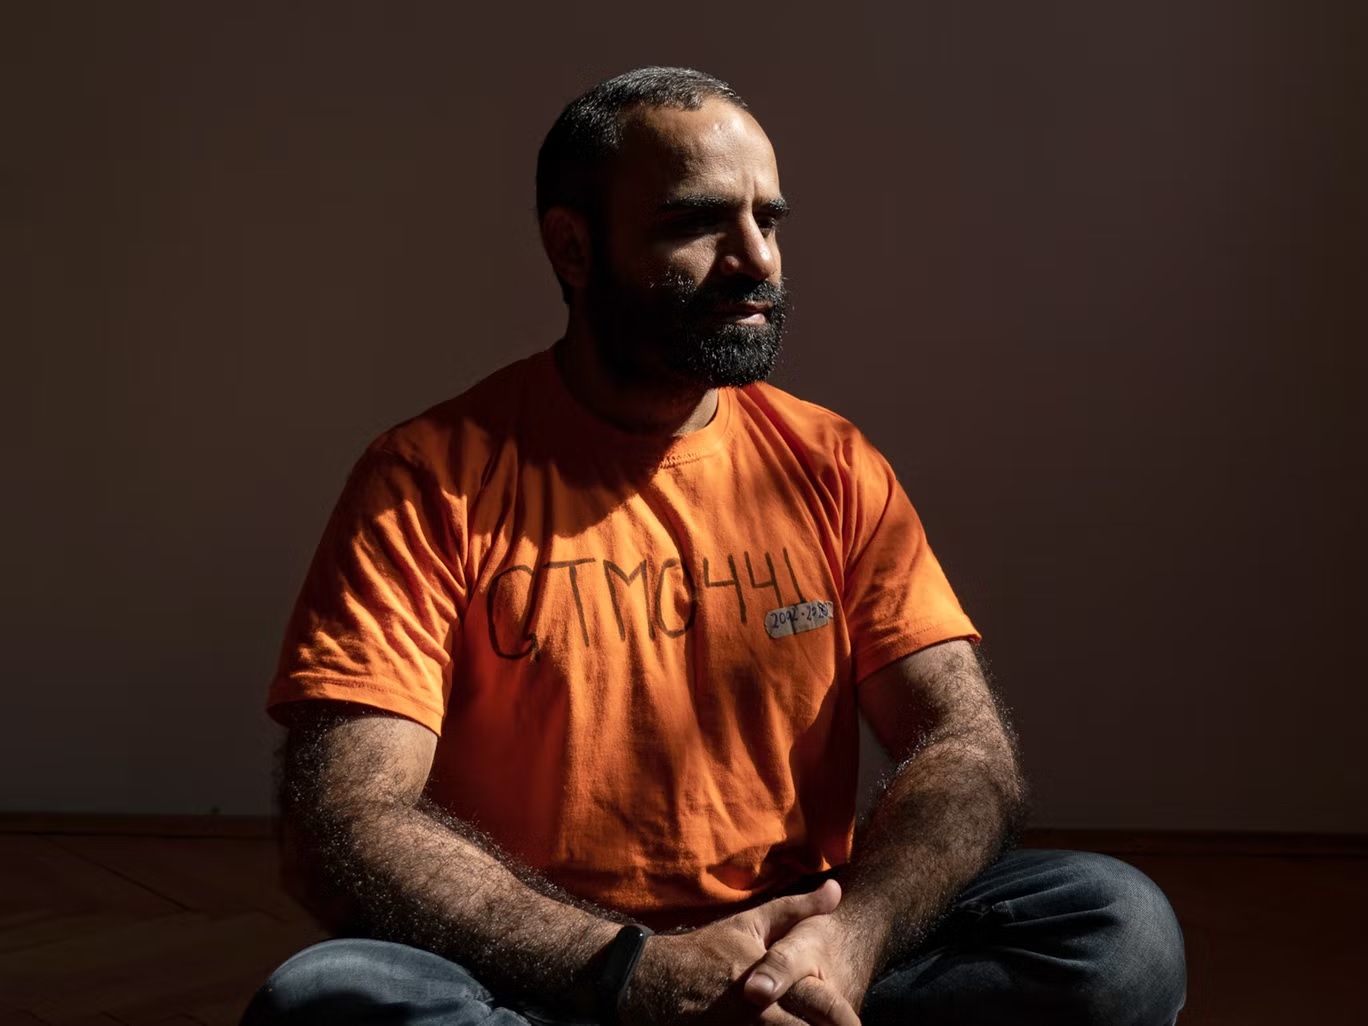 قضى منصور الضيفي 14 عاماً مسجوناً داخل معتقل خليج غوانتانامو، وهو يعيش في بلغراد، صربيا (واشنطن بوست/غيتي) 